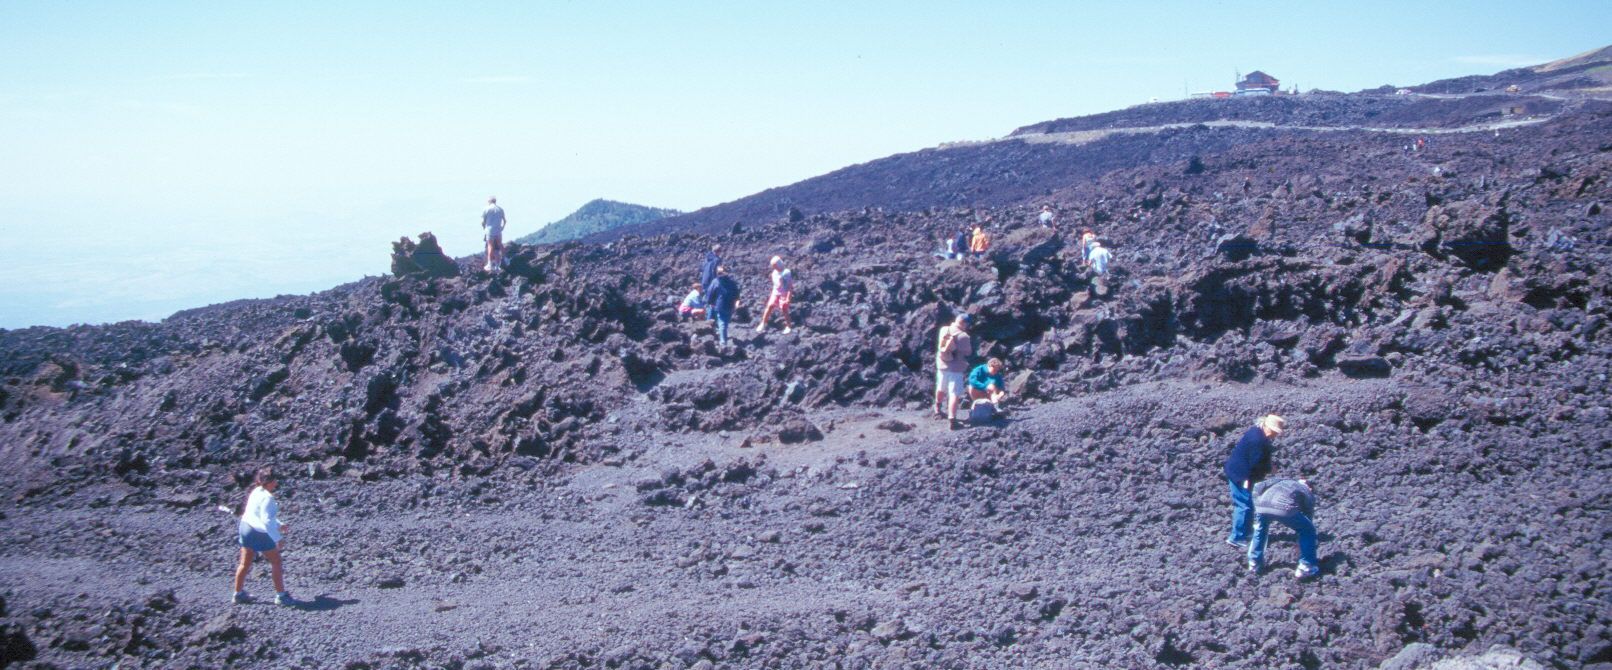 2001. Turistas caminando sobre la colada. El cruce sobre la lava evitaba un recorrido alternativo de más de 40 km.